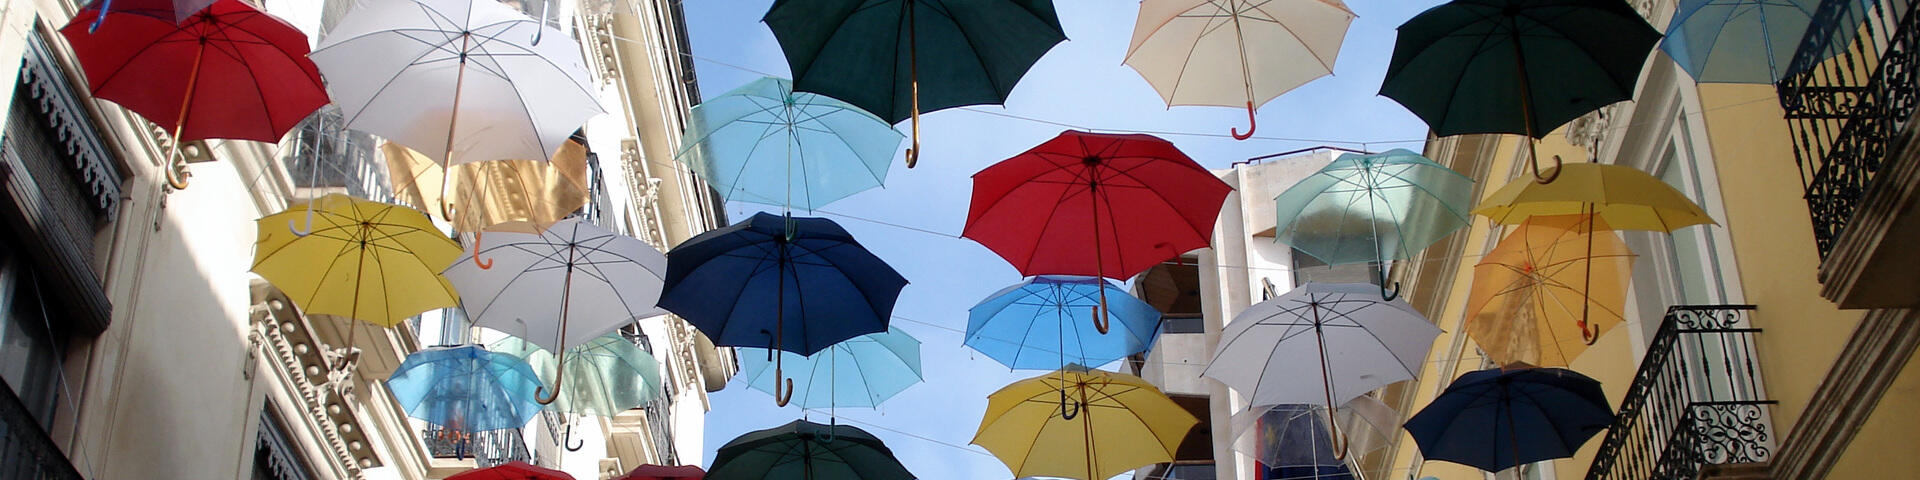 Paraguas en la calle, Alicante